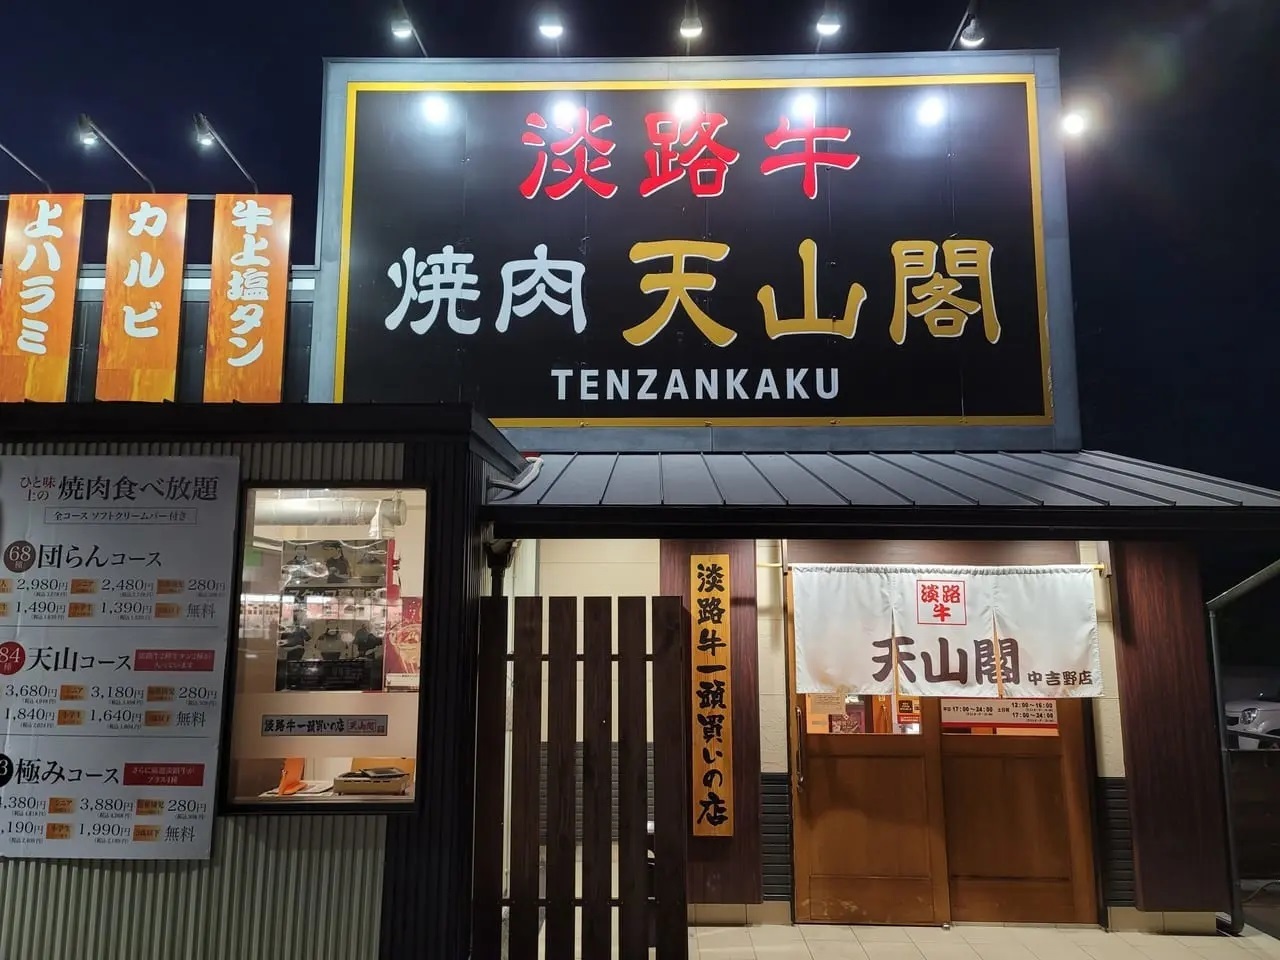 「焼肉 天山閣 中吉野店」の店舗外観 ※こちらの写真のみ2021年に撮影したものです。